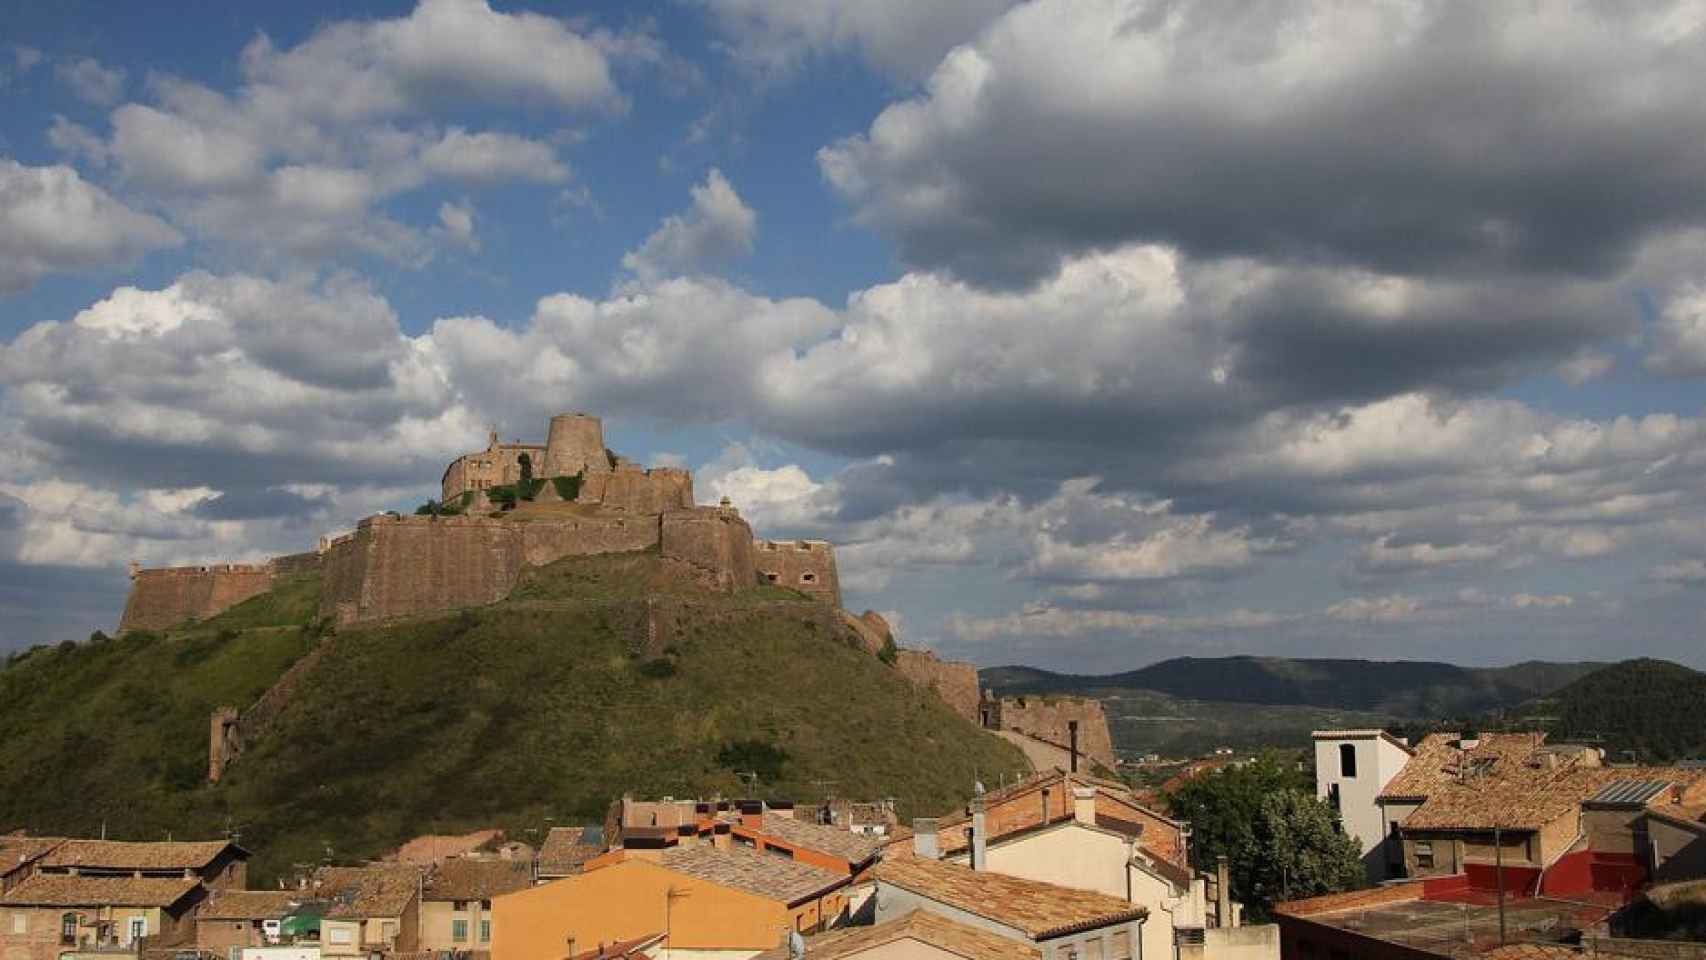 Castillo de Cardona, uno de los atractivos turísticos de Paisatges Barcelona / ARNAUGIR - WIKIMEDIA COMMONS